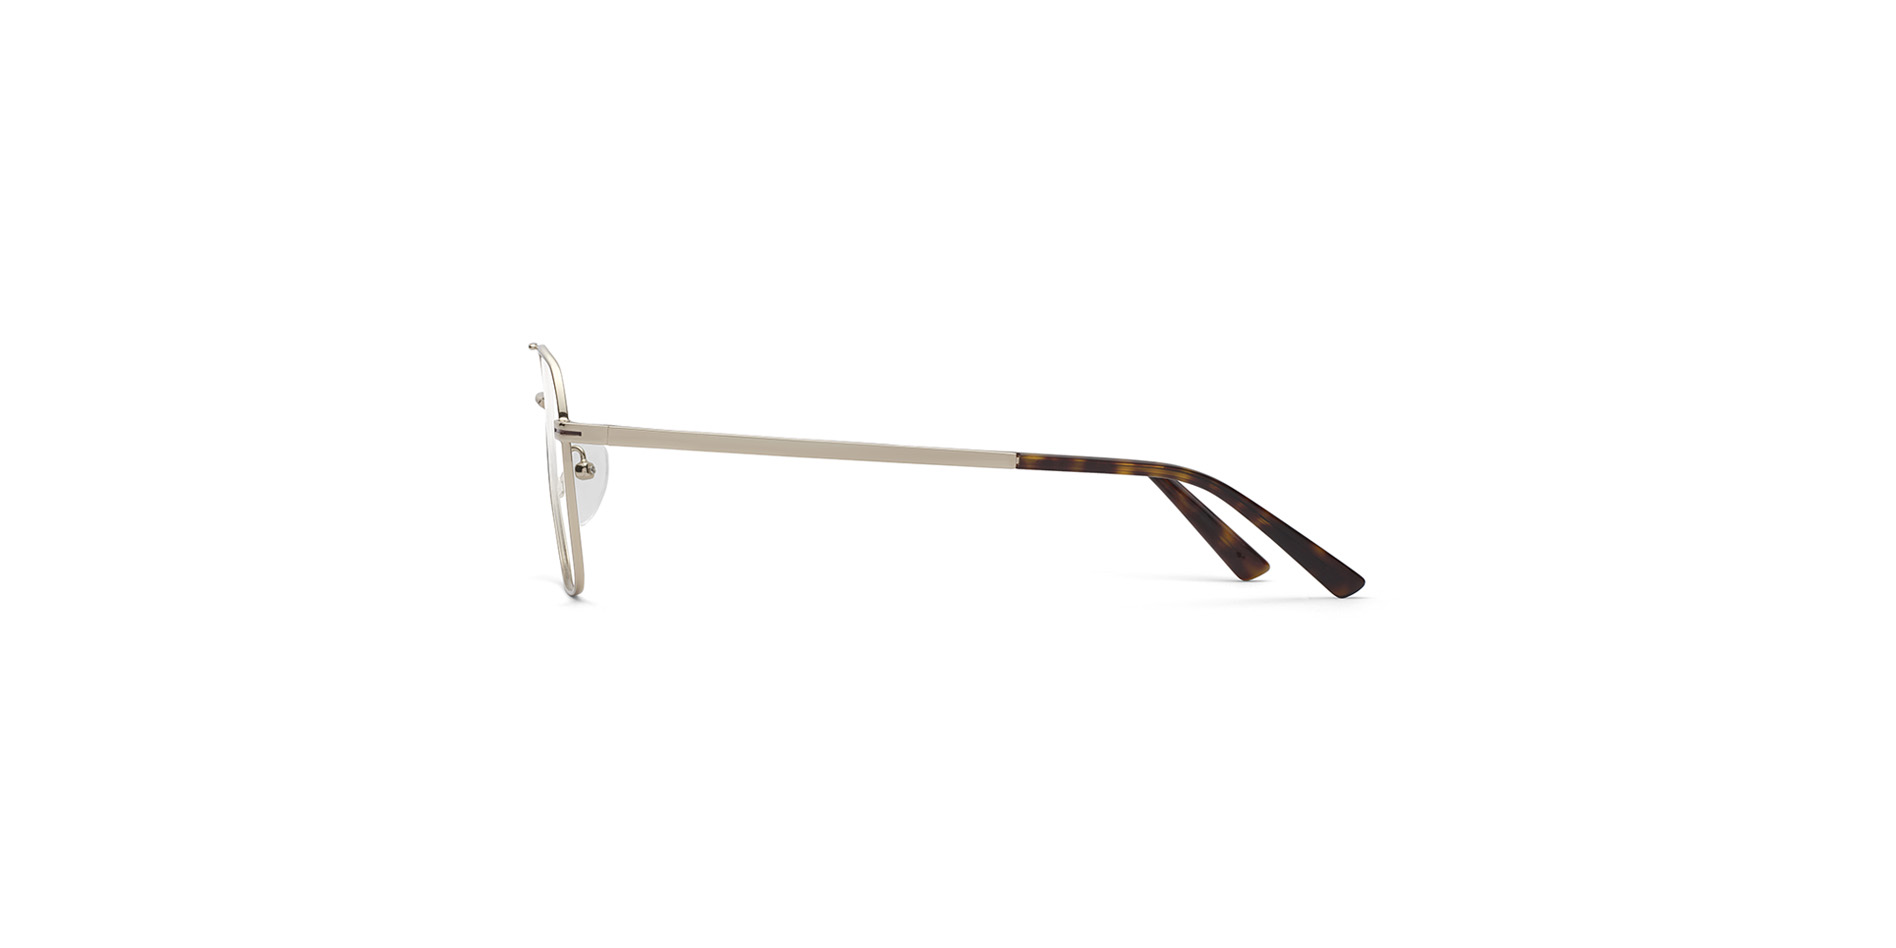 Classici da pilota: occhiali da vista uomo in acciaio inox,  MC 569 CL